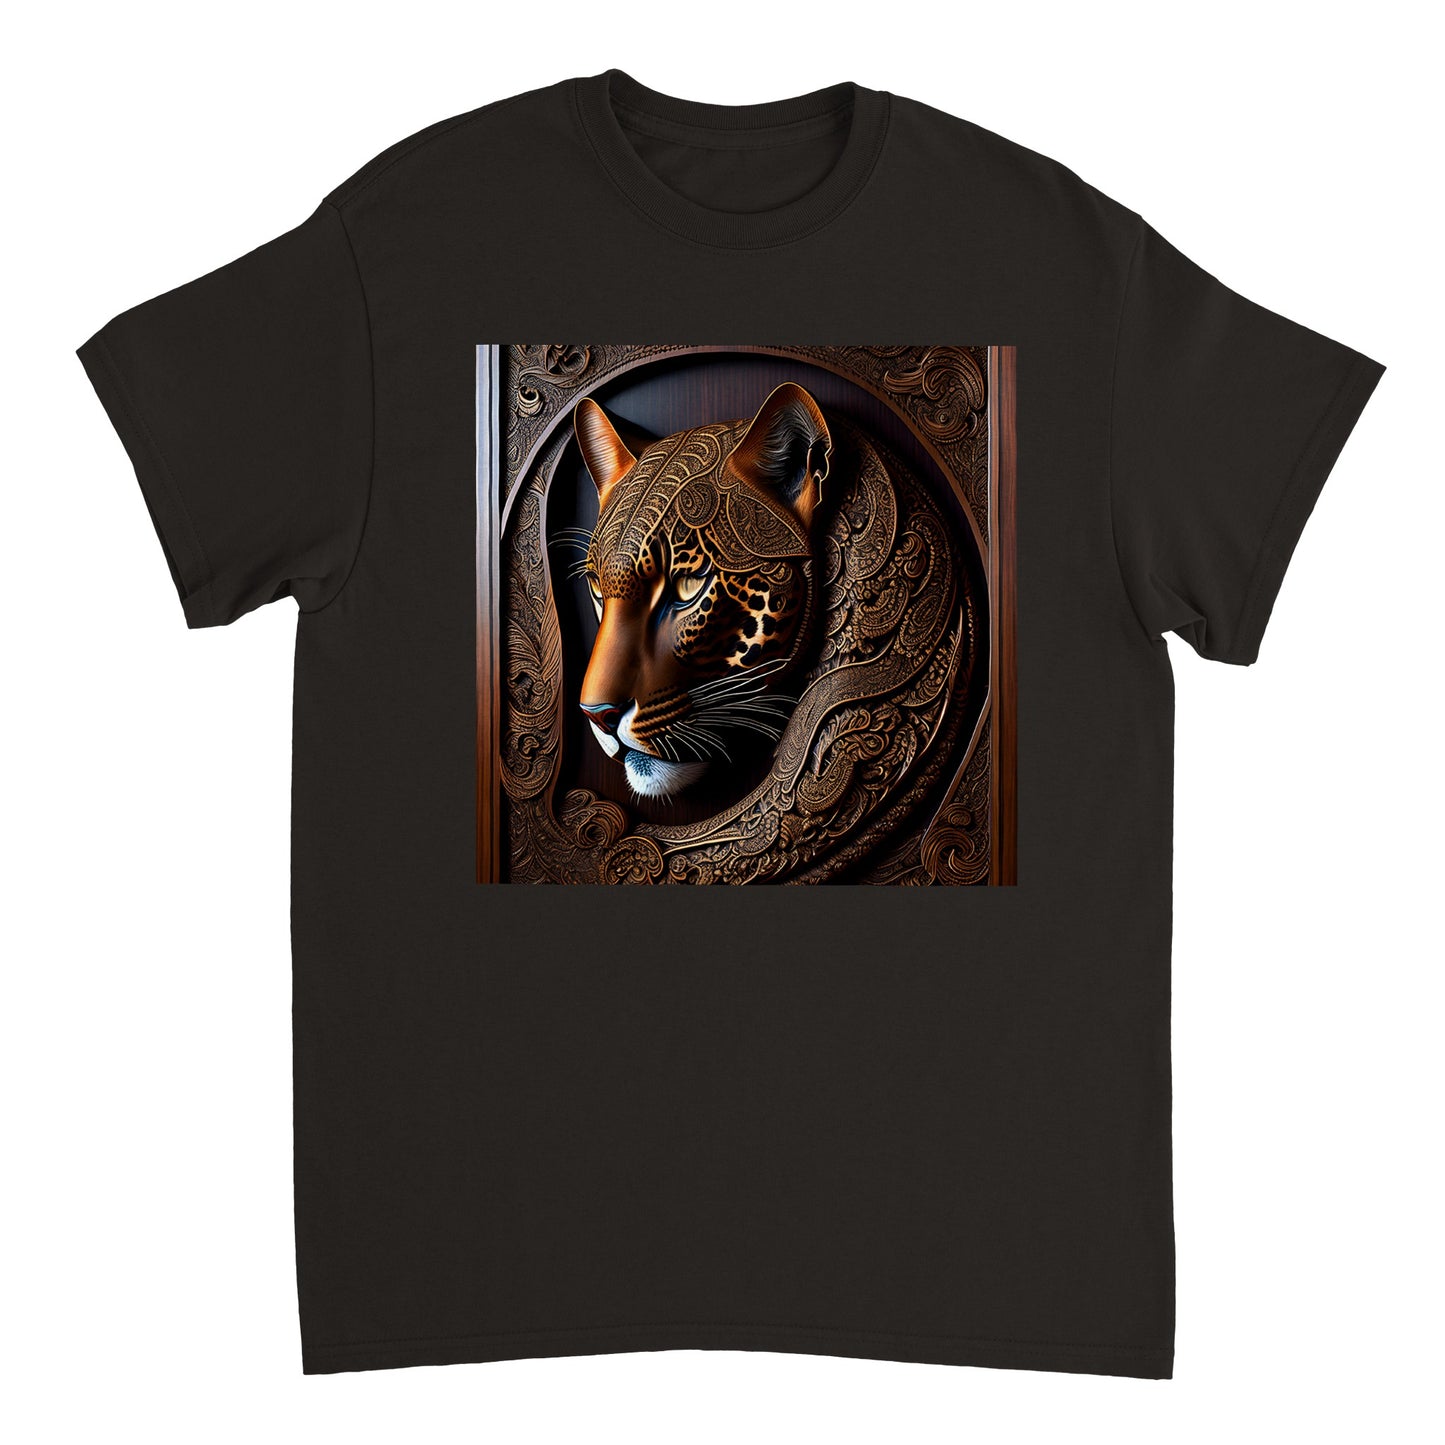 3D Wooden Animal Art - Heavyweight Unisex Crewneck T-shirt 55